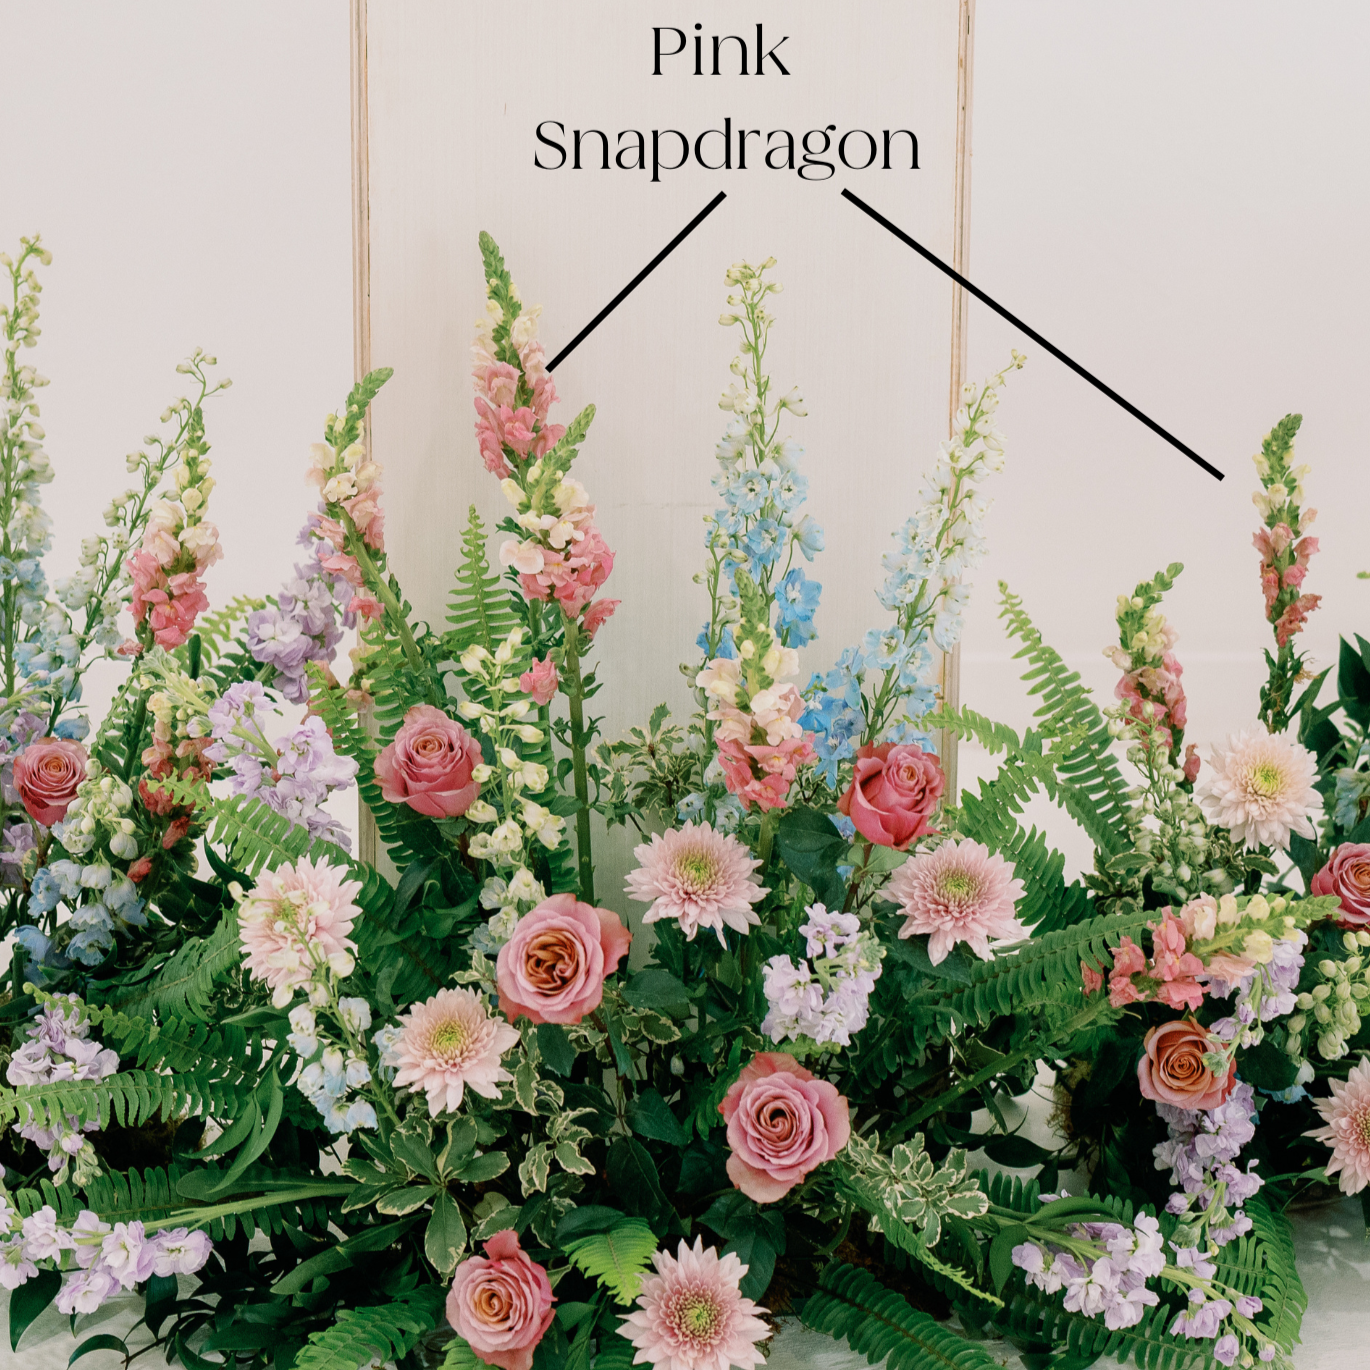 pink snapdragon flower